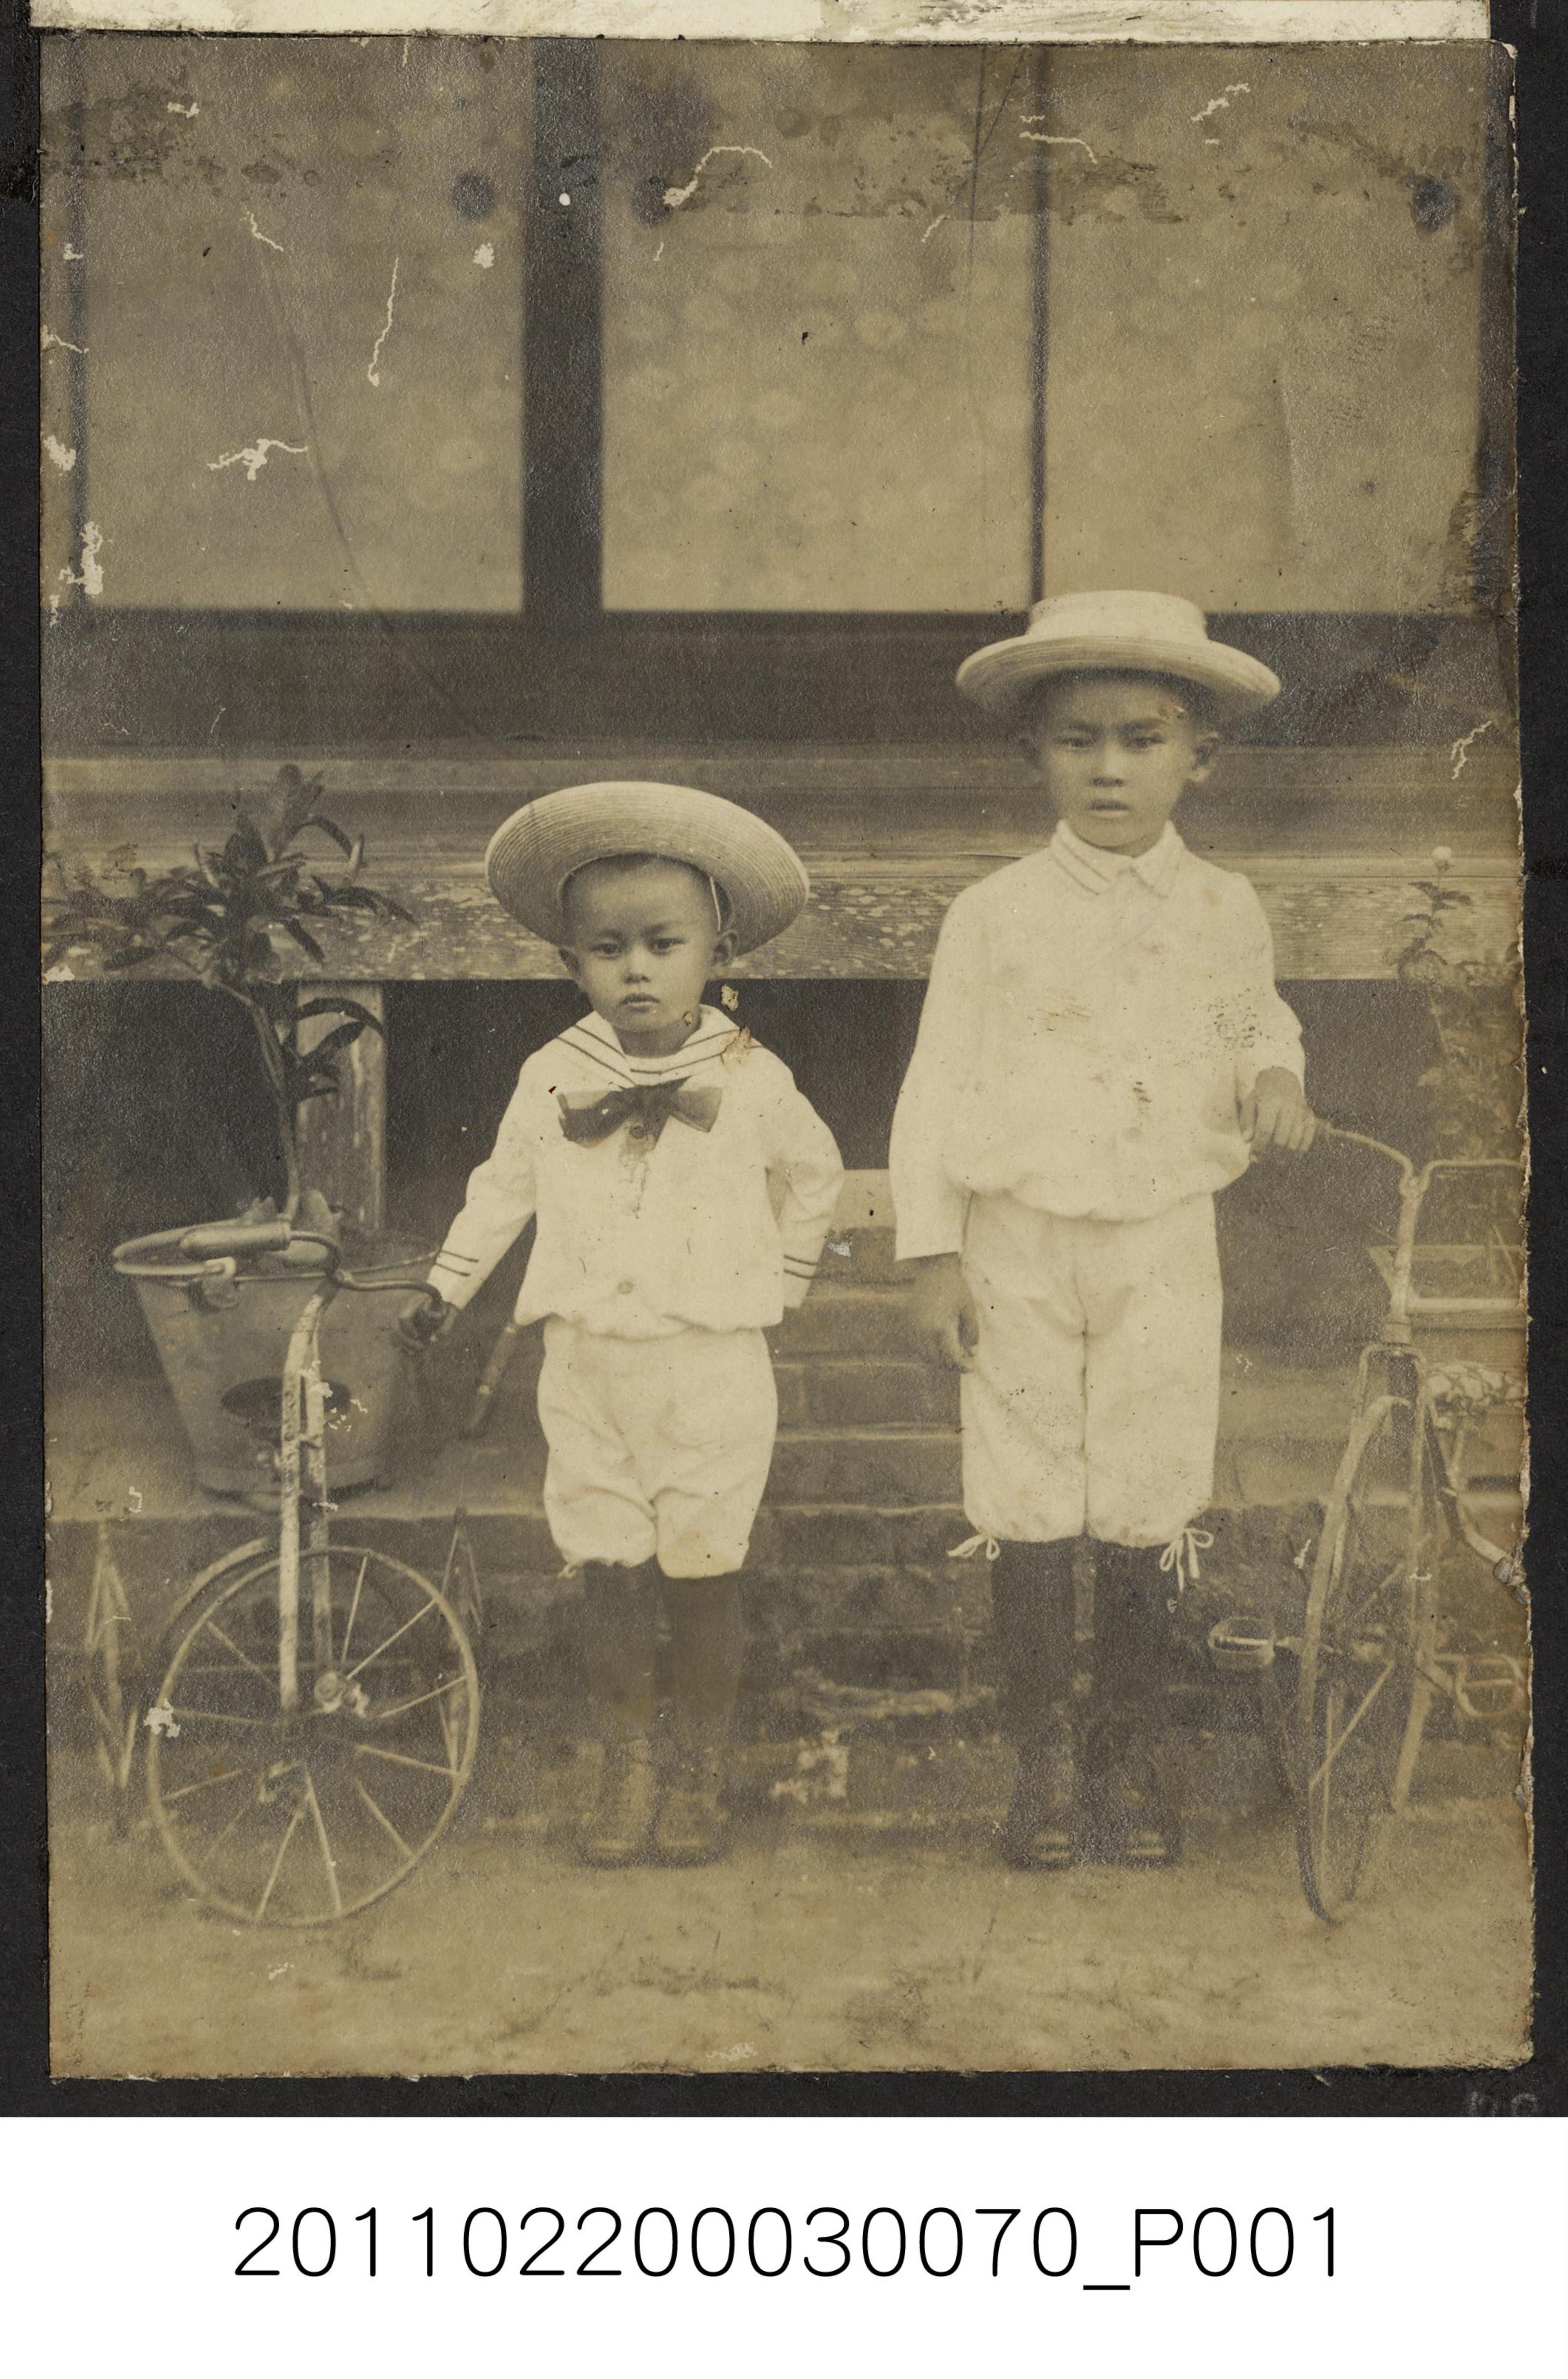 兩孩童與腳踏車合照 (共1張)